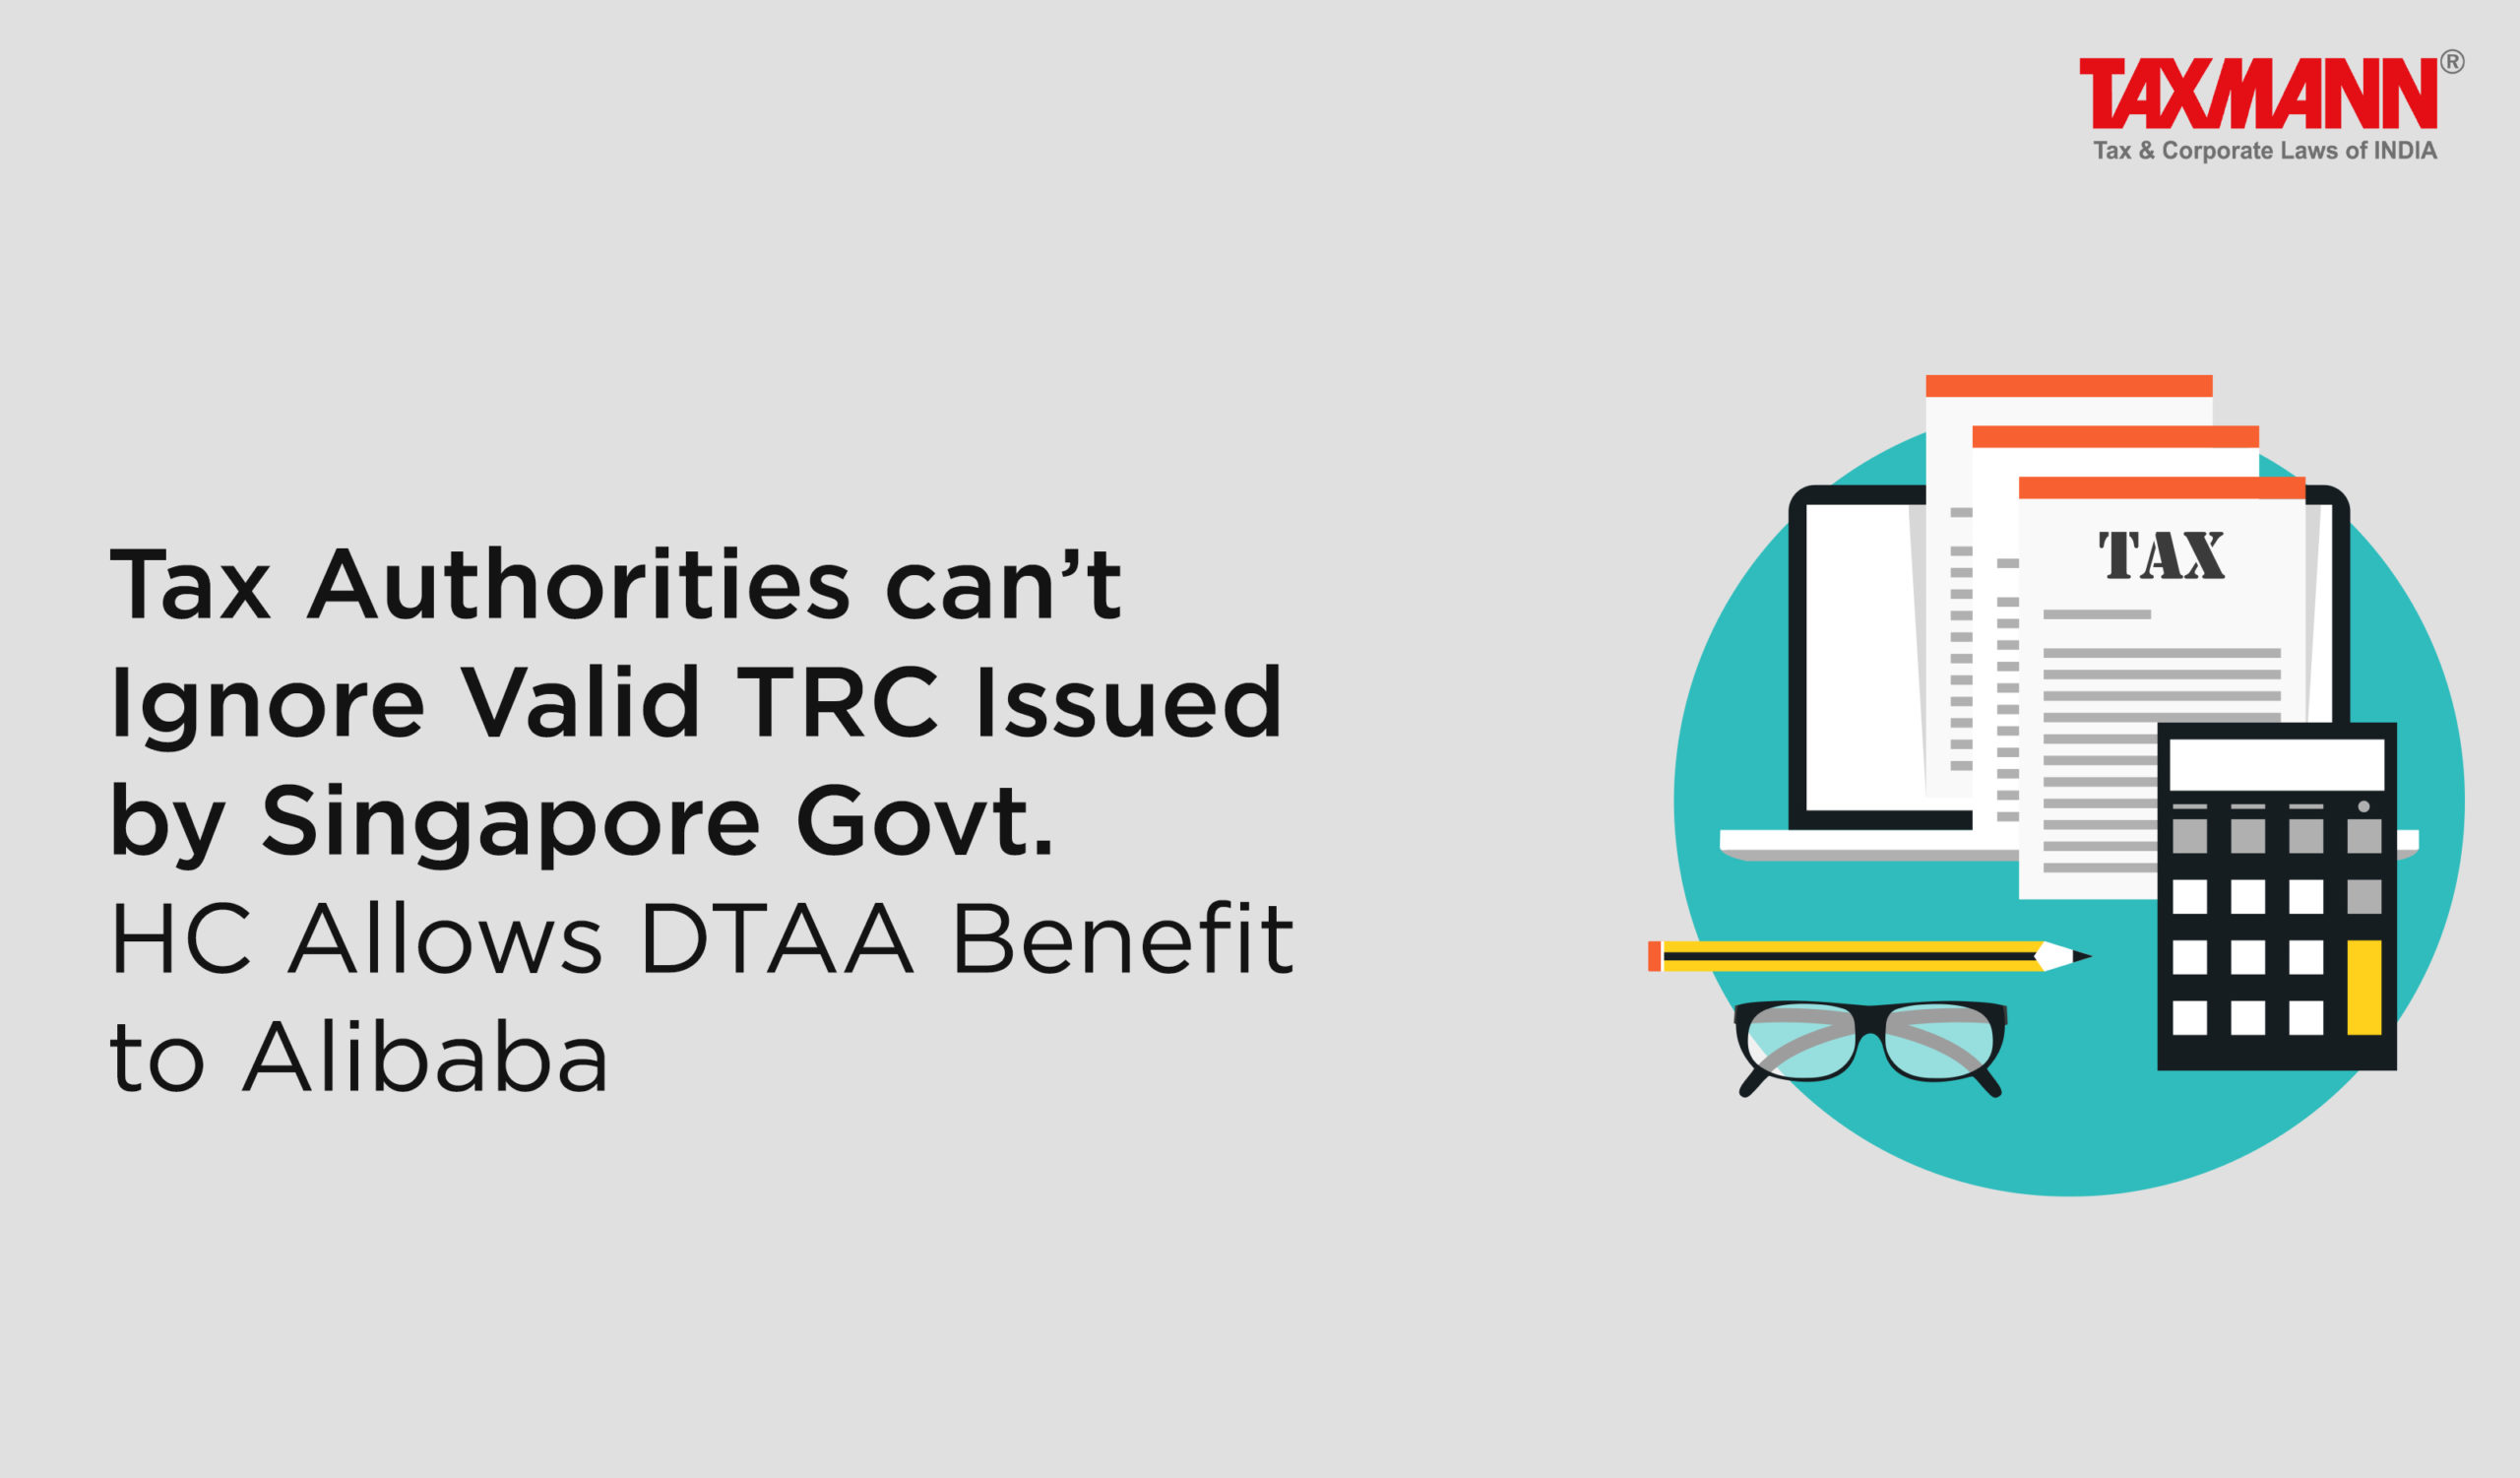 Tax residency certificate' DTAA